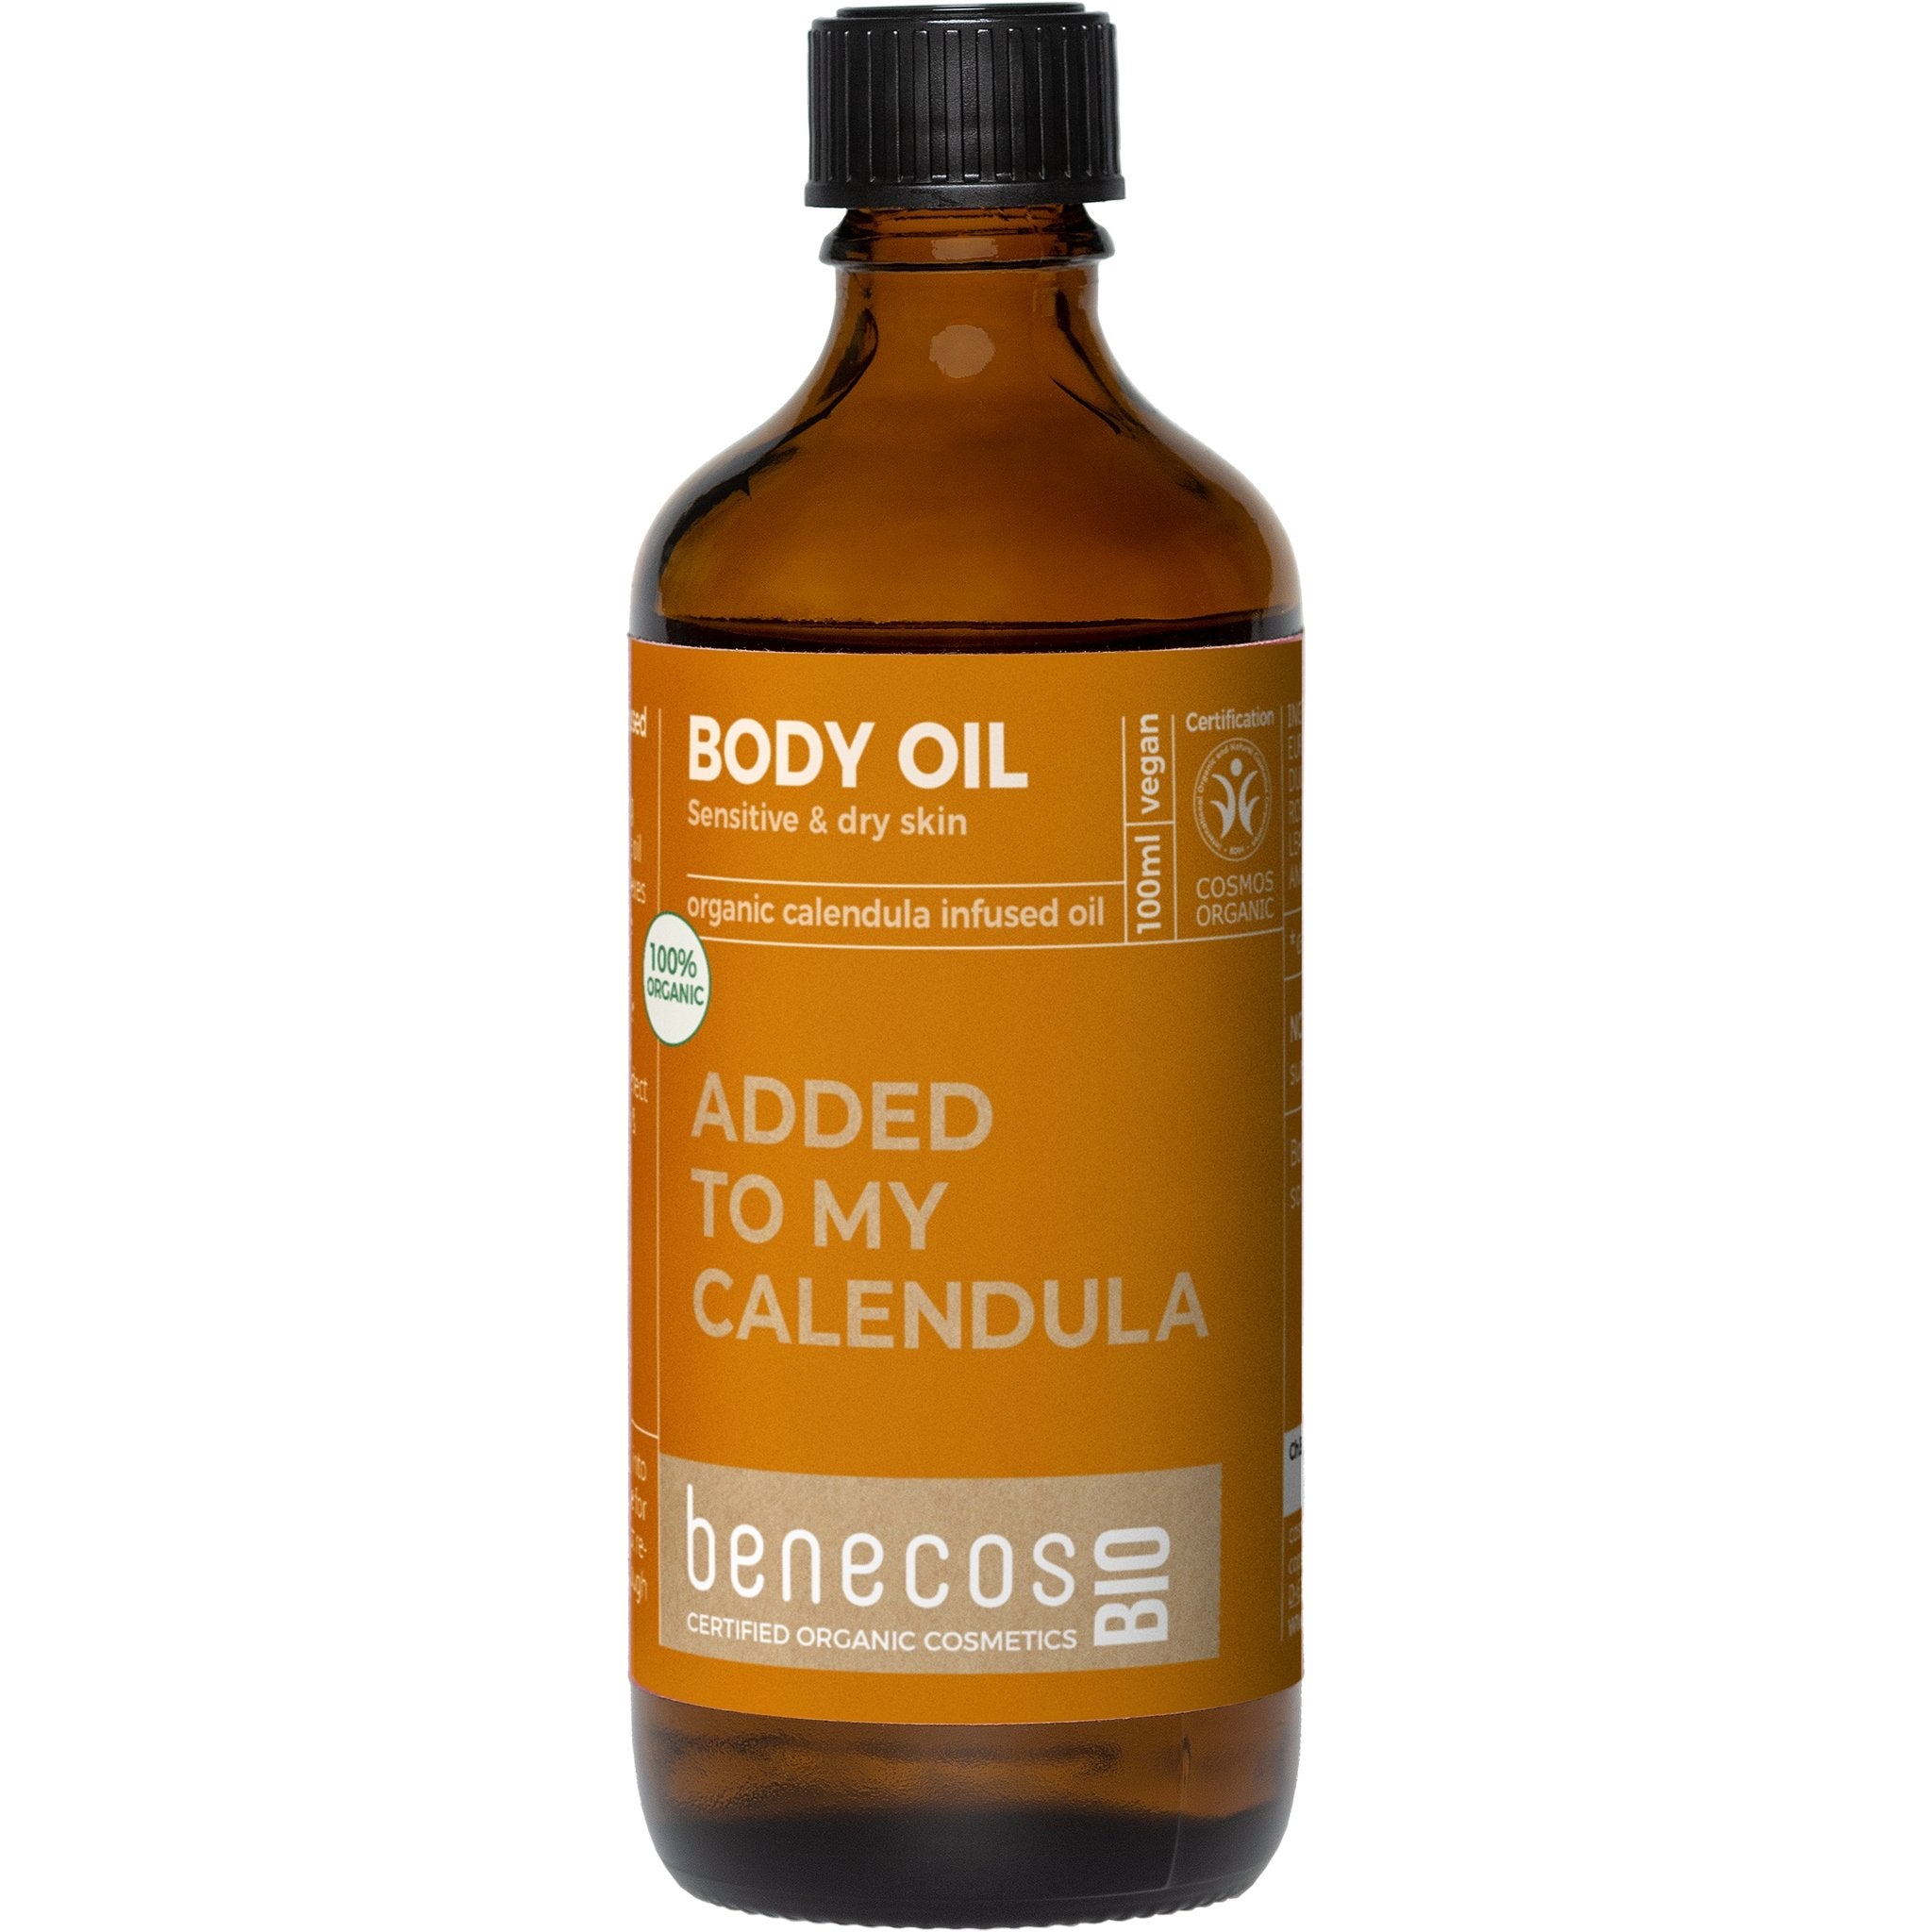 Added To My Calendula - Calendula Infused Body Oil - mypure.co.uk